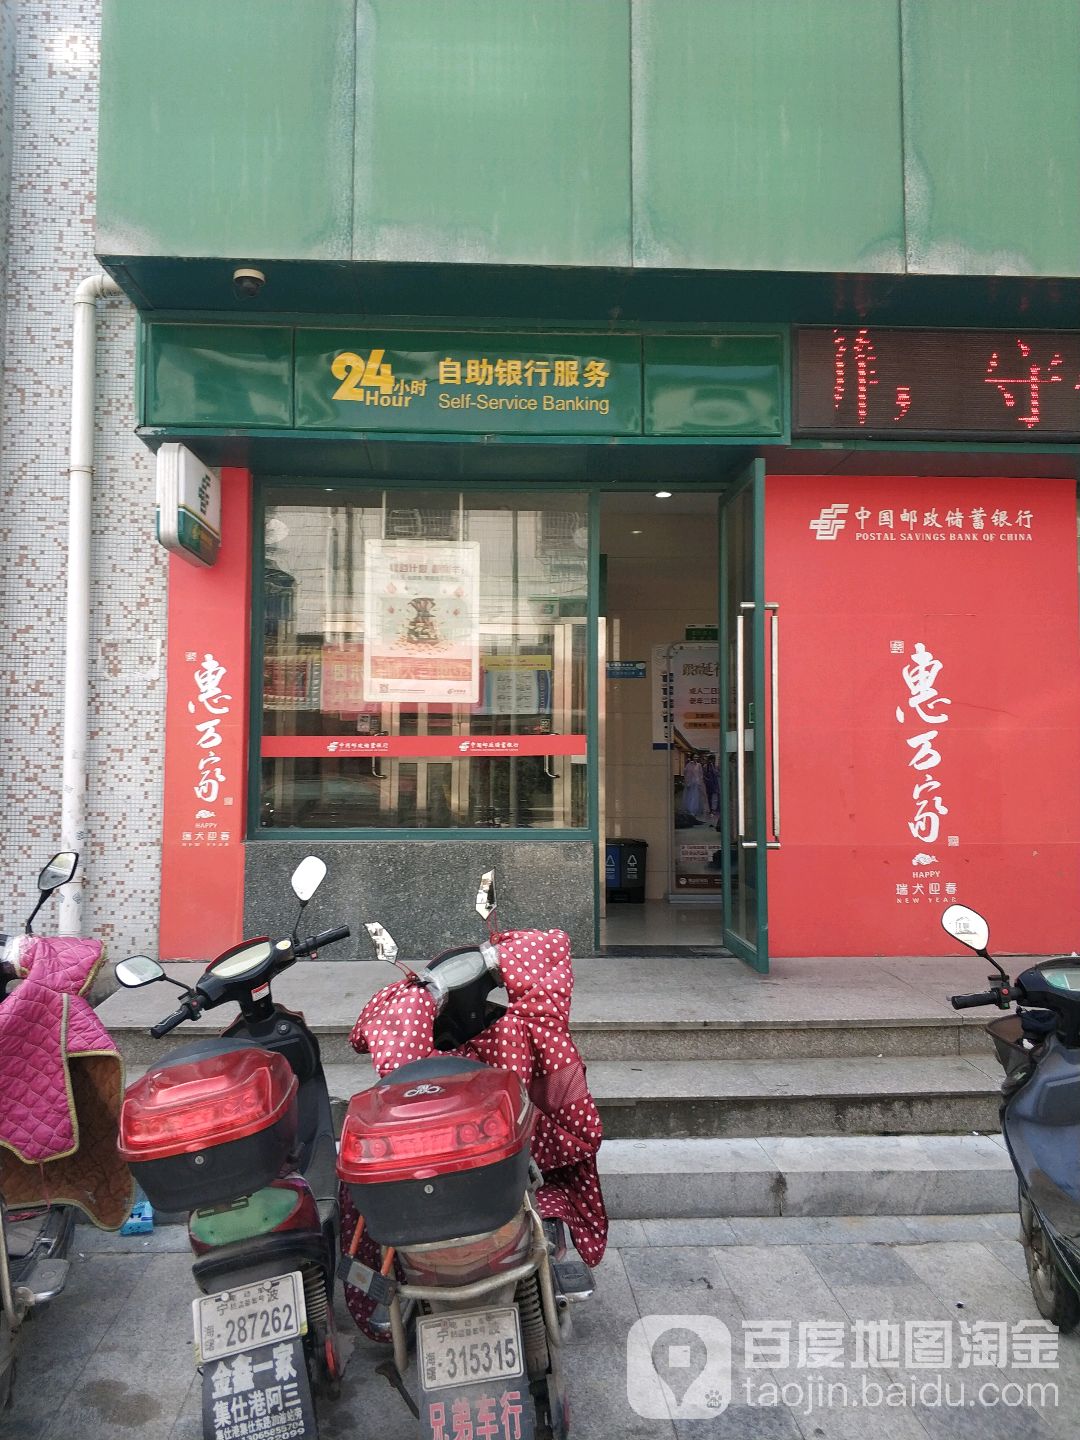 中國郵政儲蓄銀行24小時自助銀行(橫街鎮營業所)